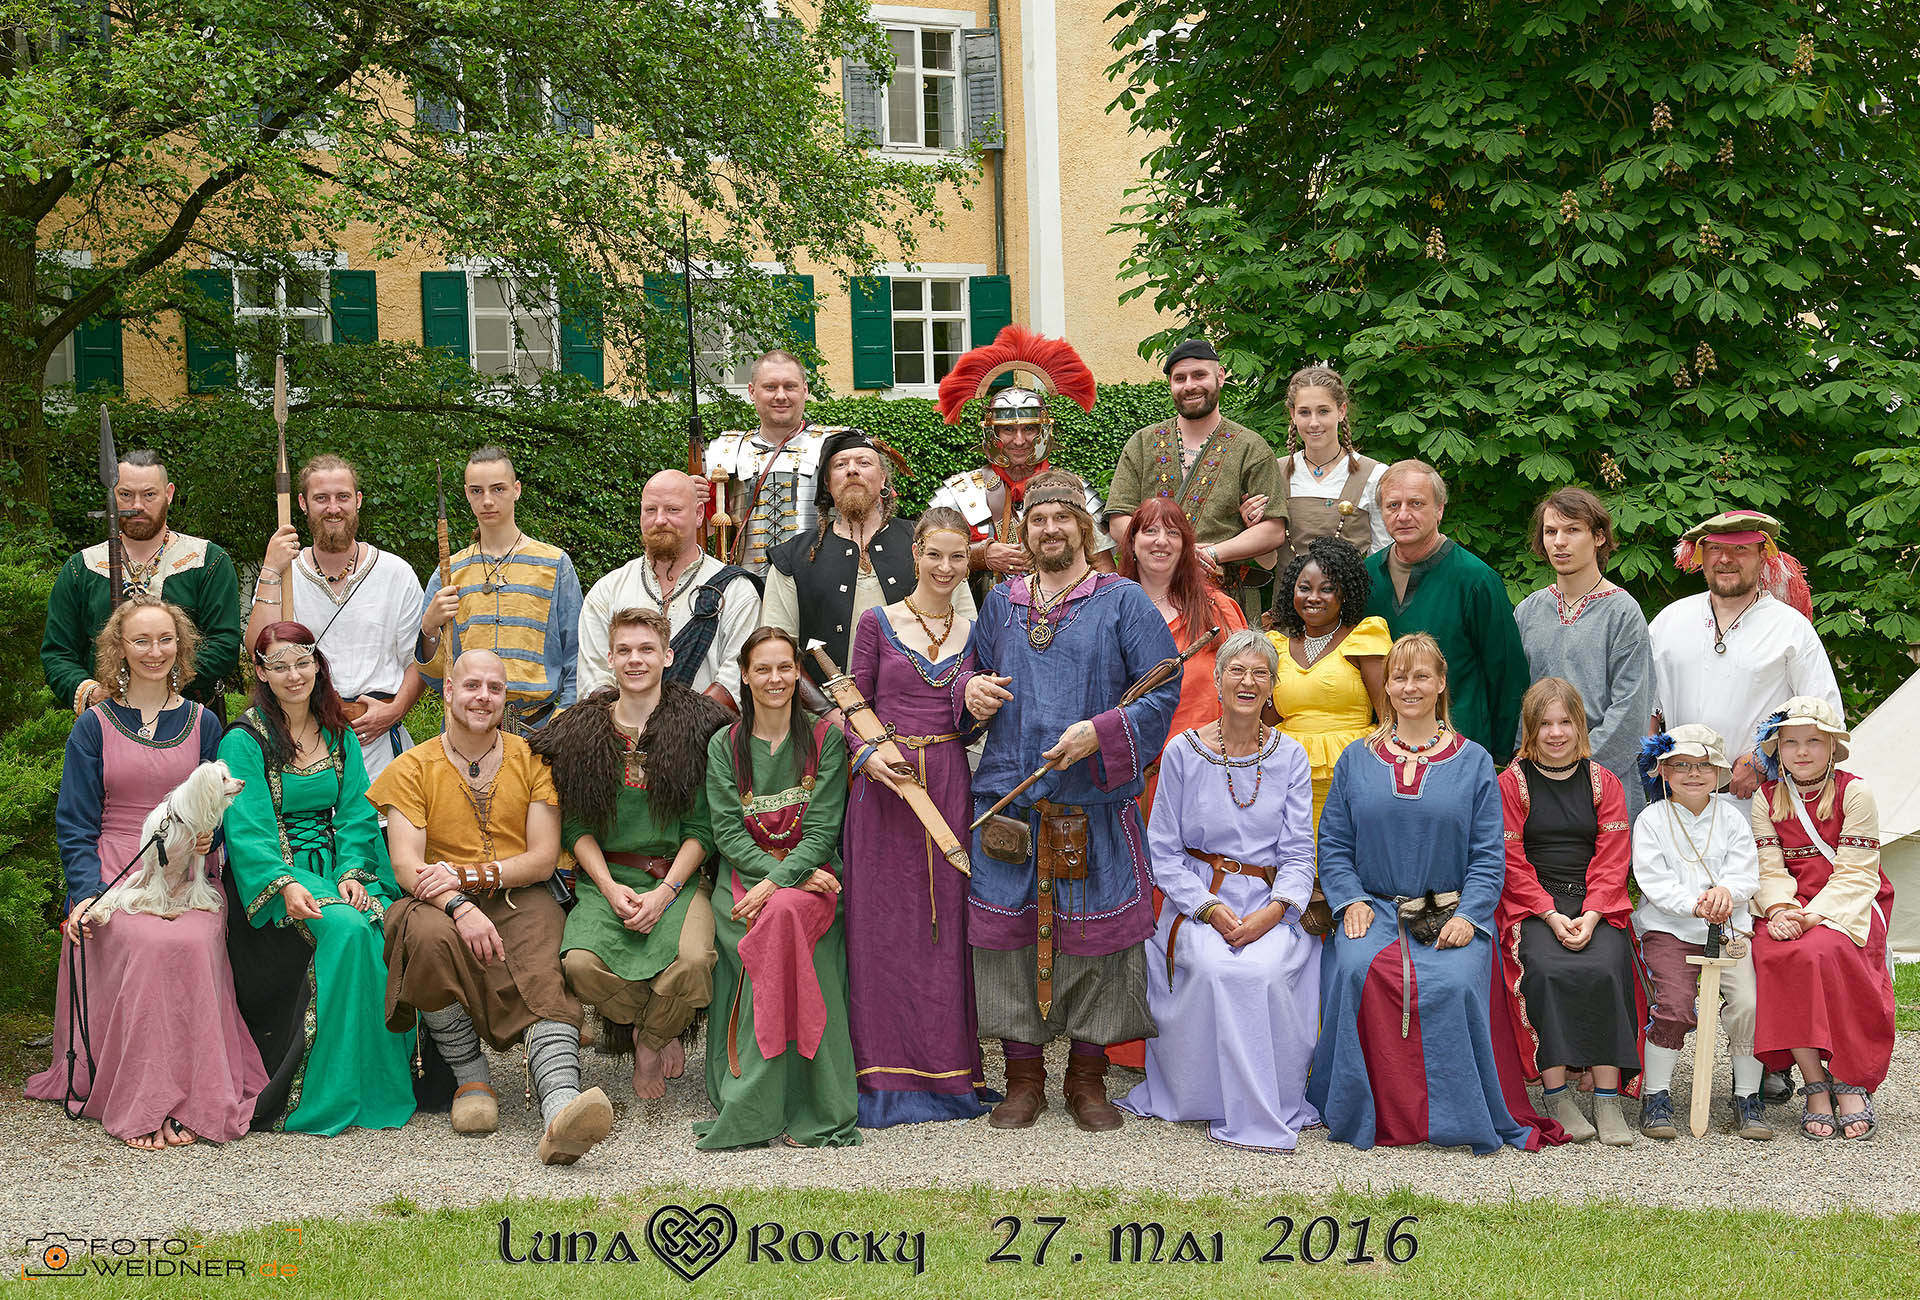 Gruppenfoto der Mittelalterhochzeit auf Schloss Sandizell